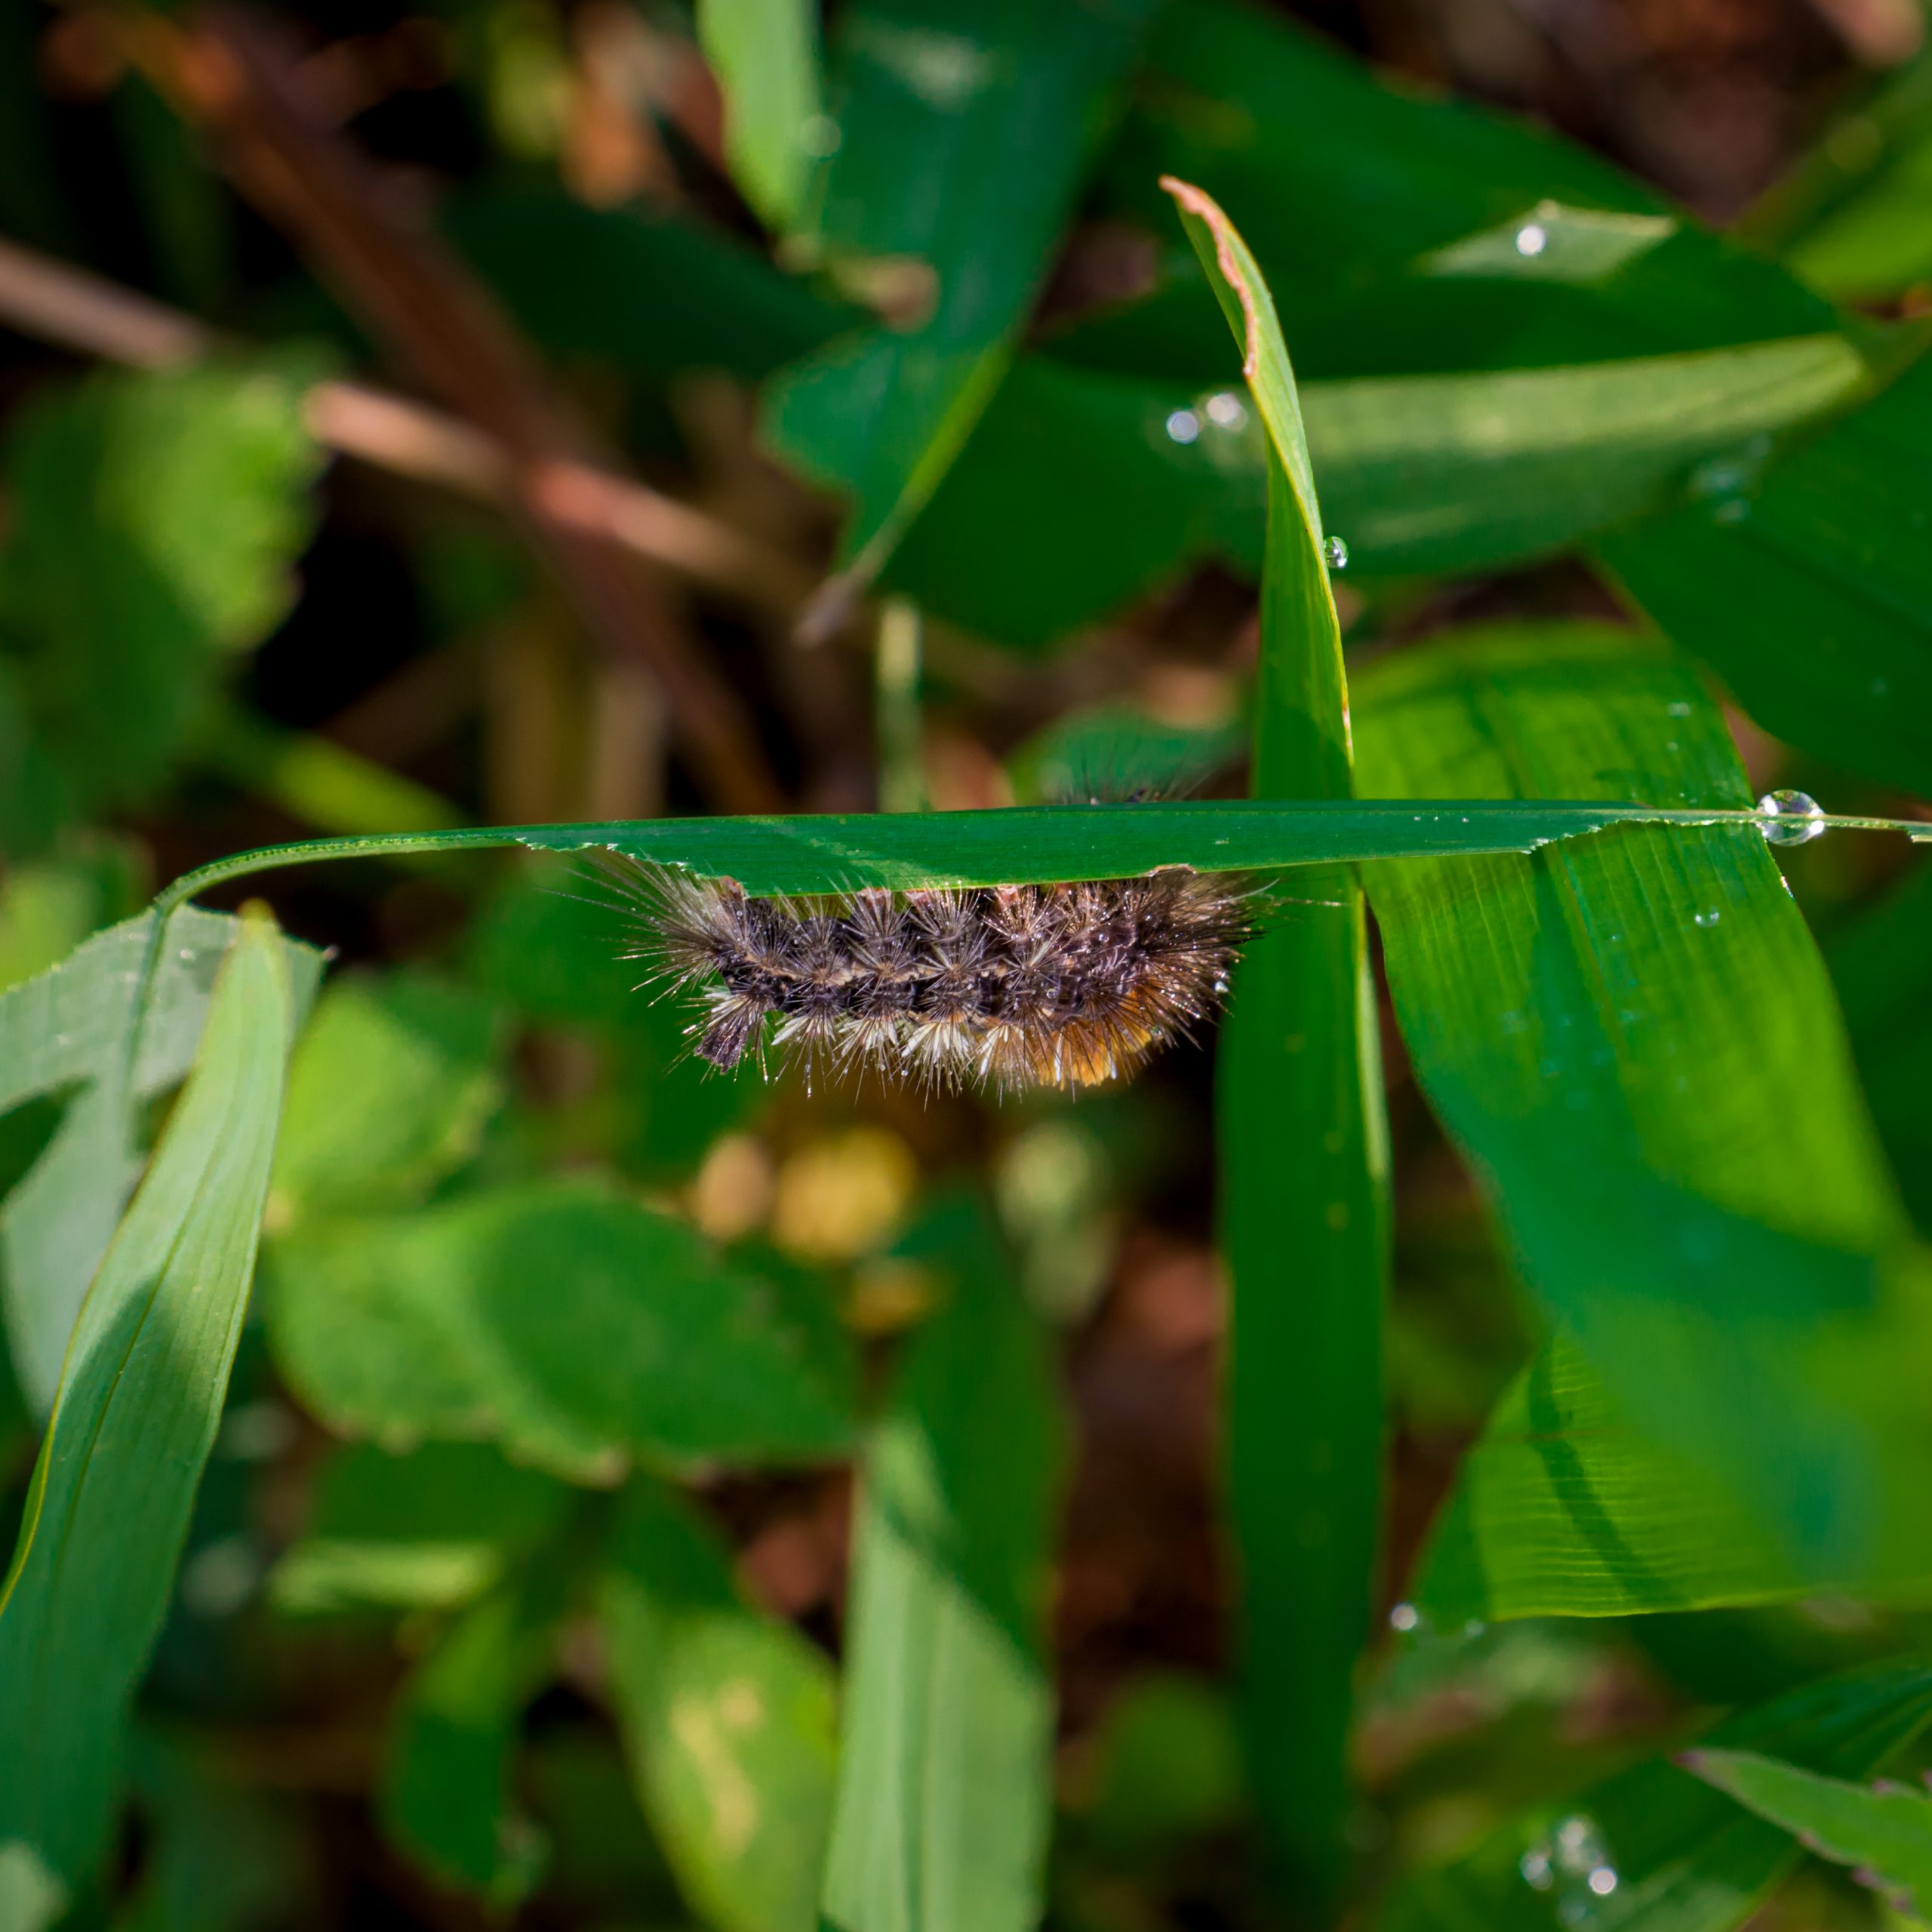 A thorny worm on a plant leaf